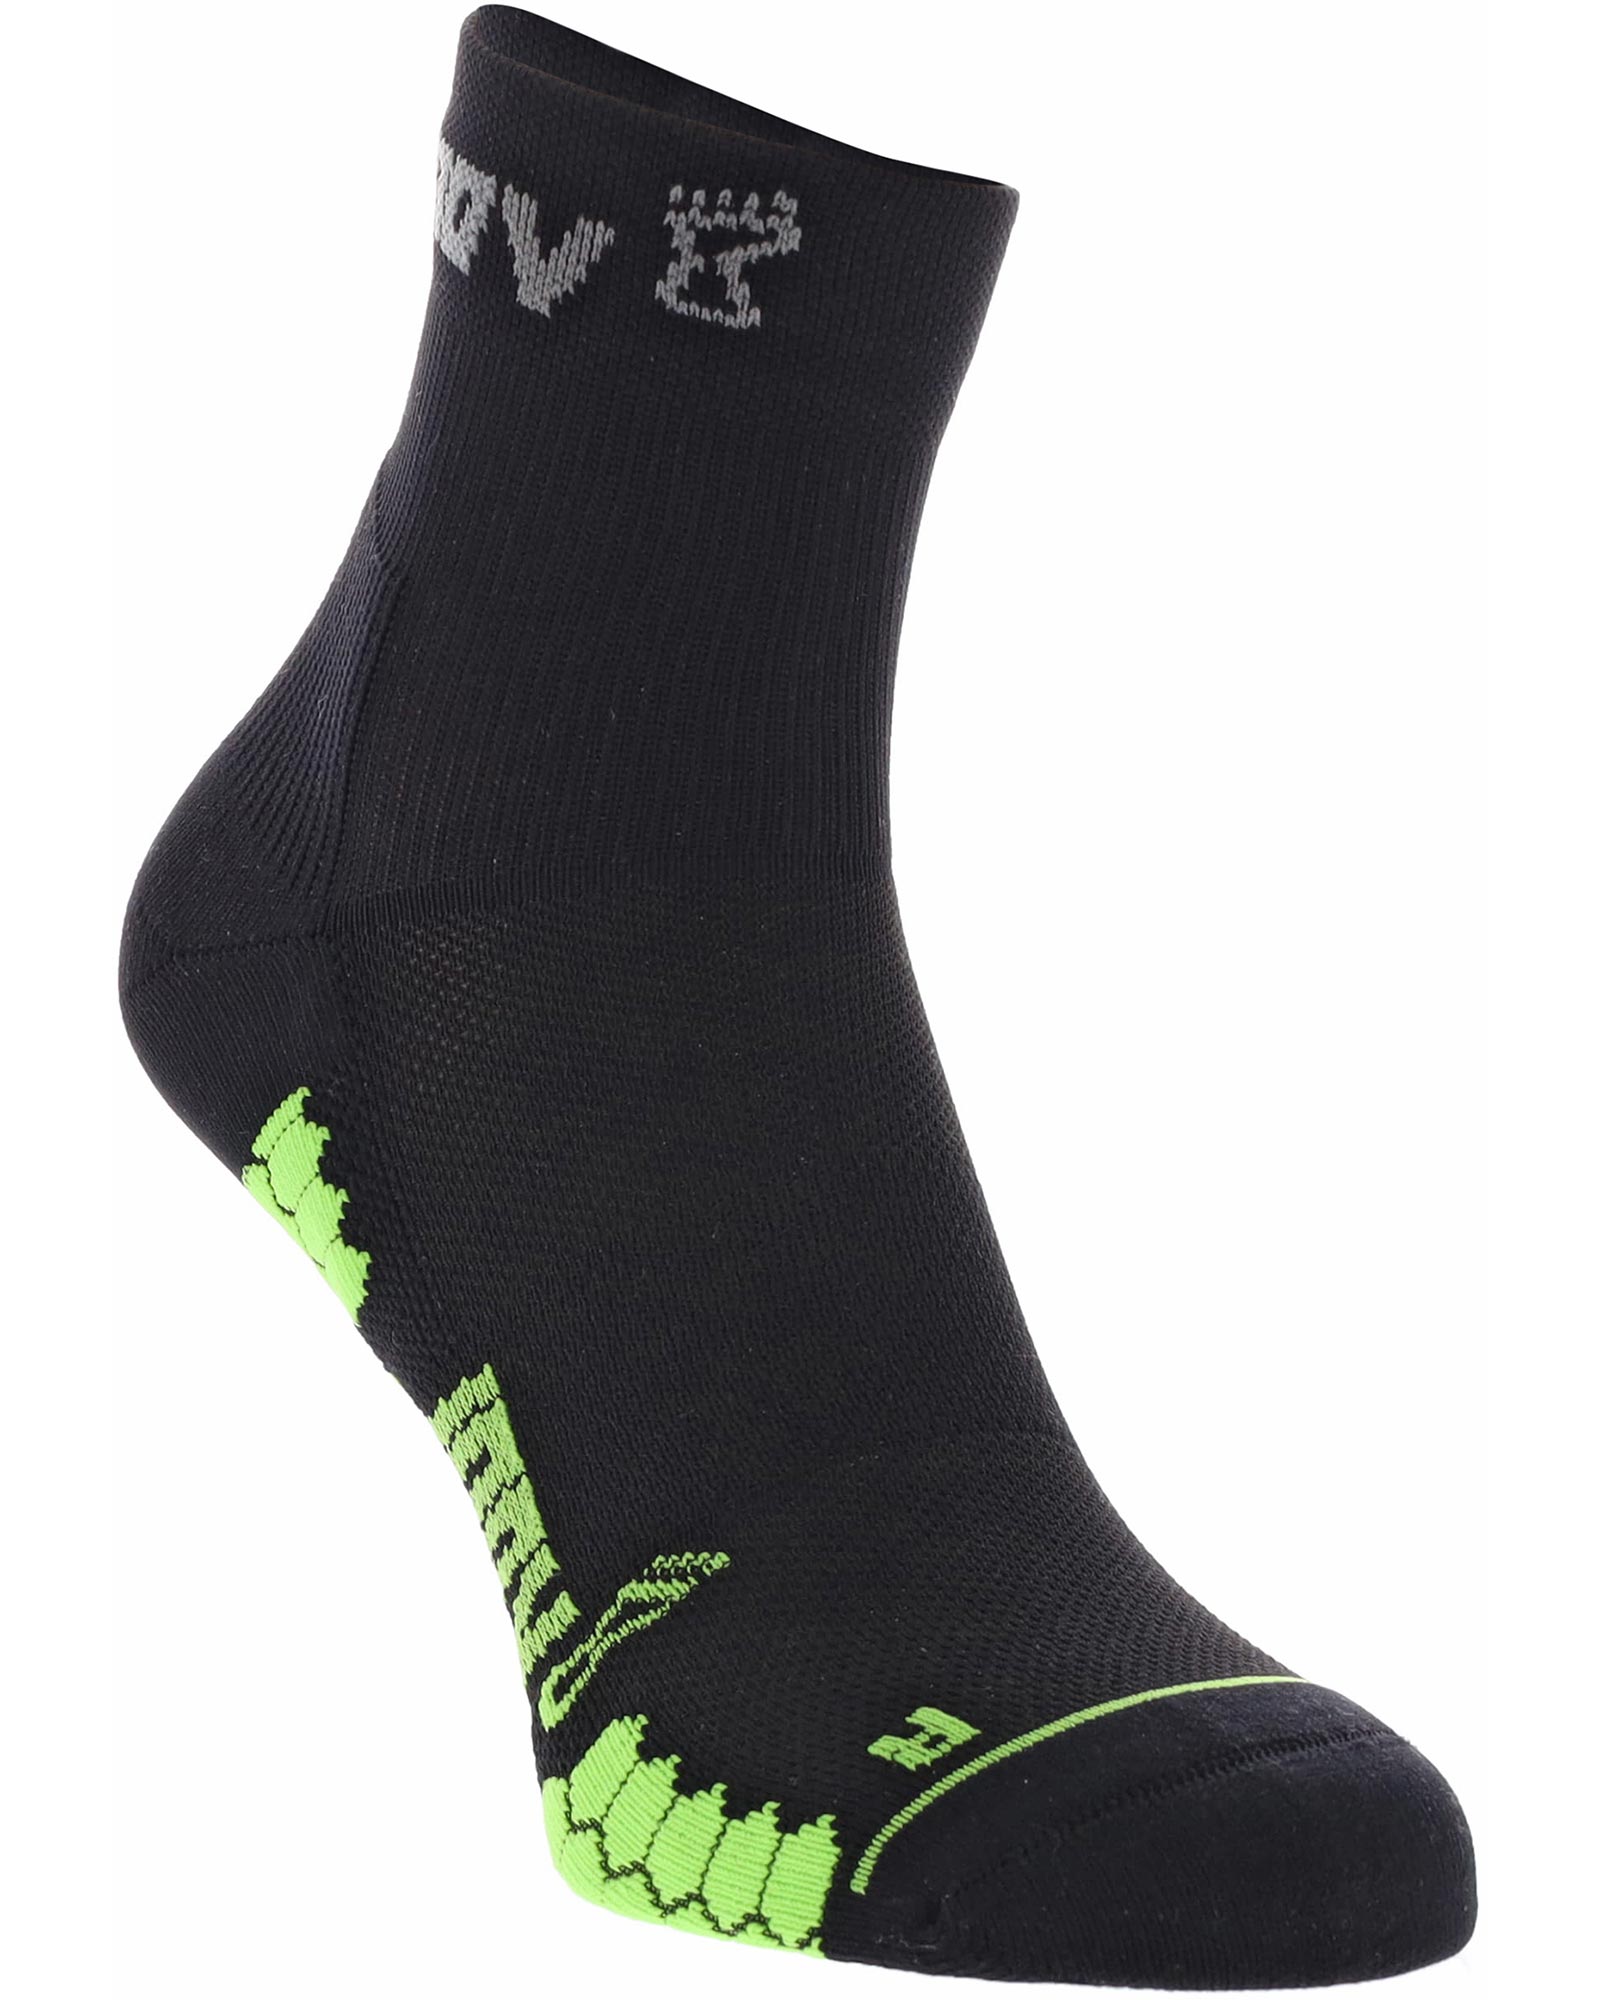 Inov 8 Trailfly Mid Socks - Black/Green M